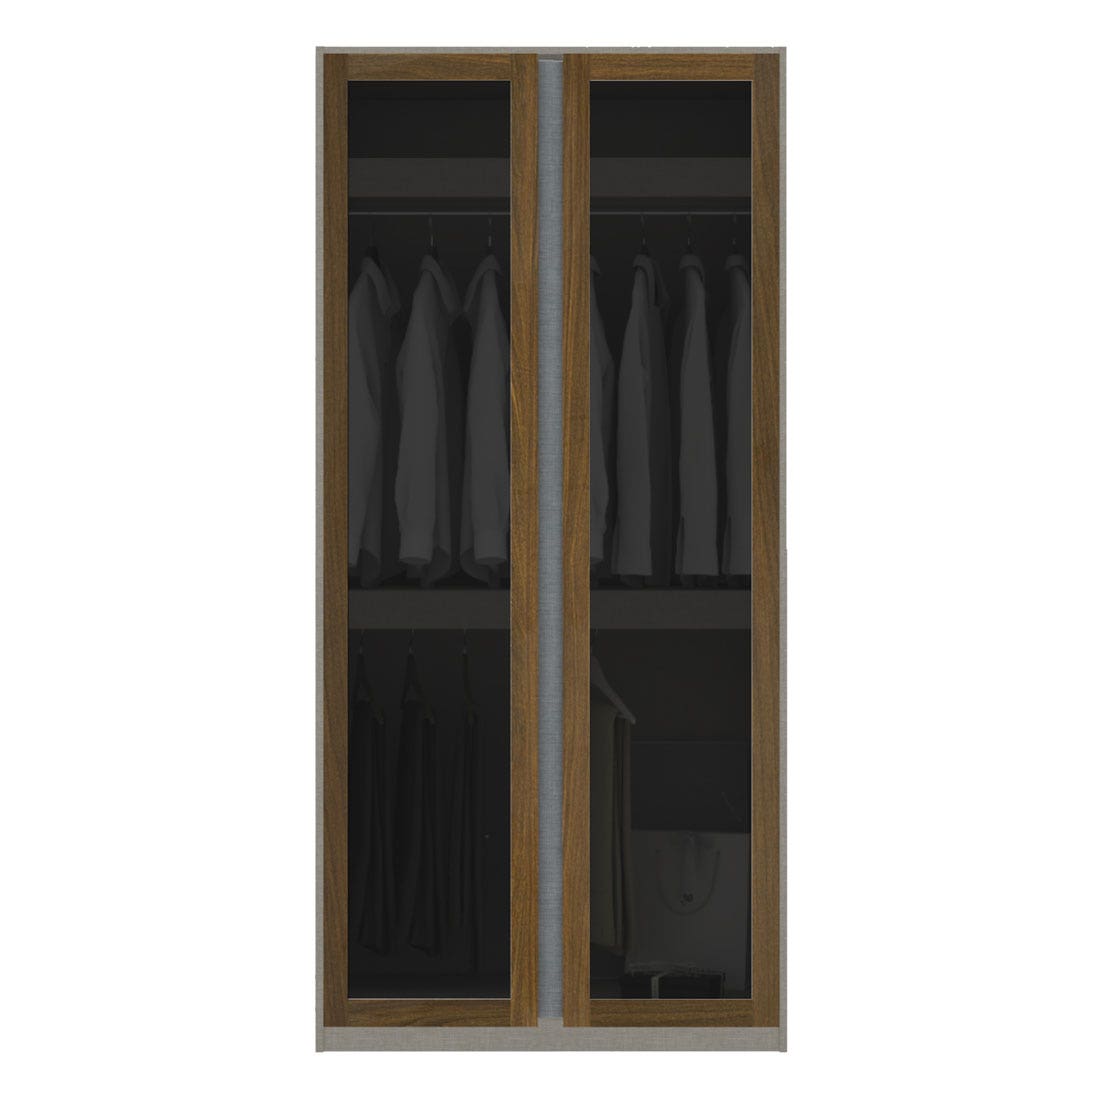 ตู้เสื้อผ้า แขวนบน-ล่าง OP-B ขนาด 100 ซม. รุ่น Blox สีไม้เข้ม&กระจกชา1